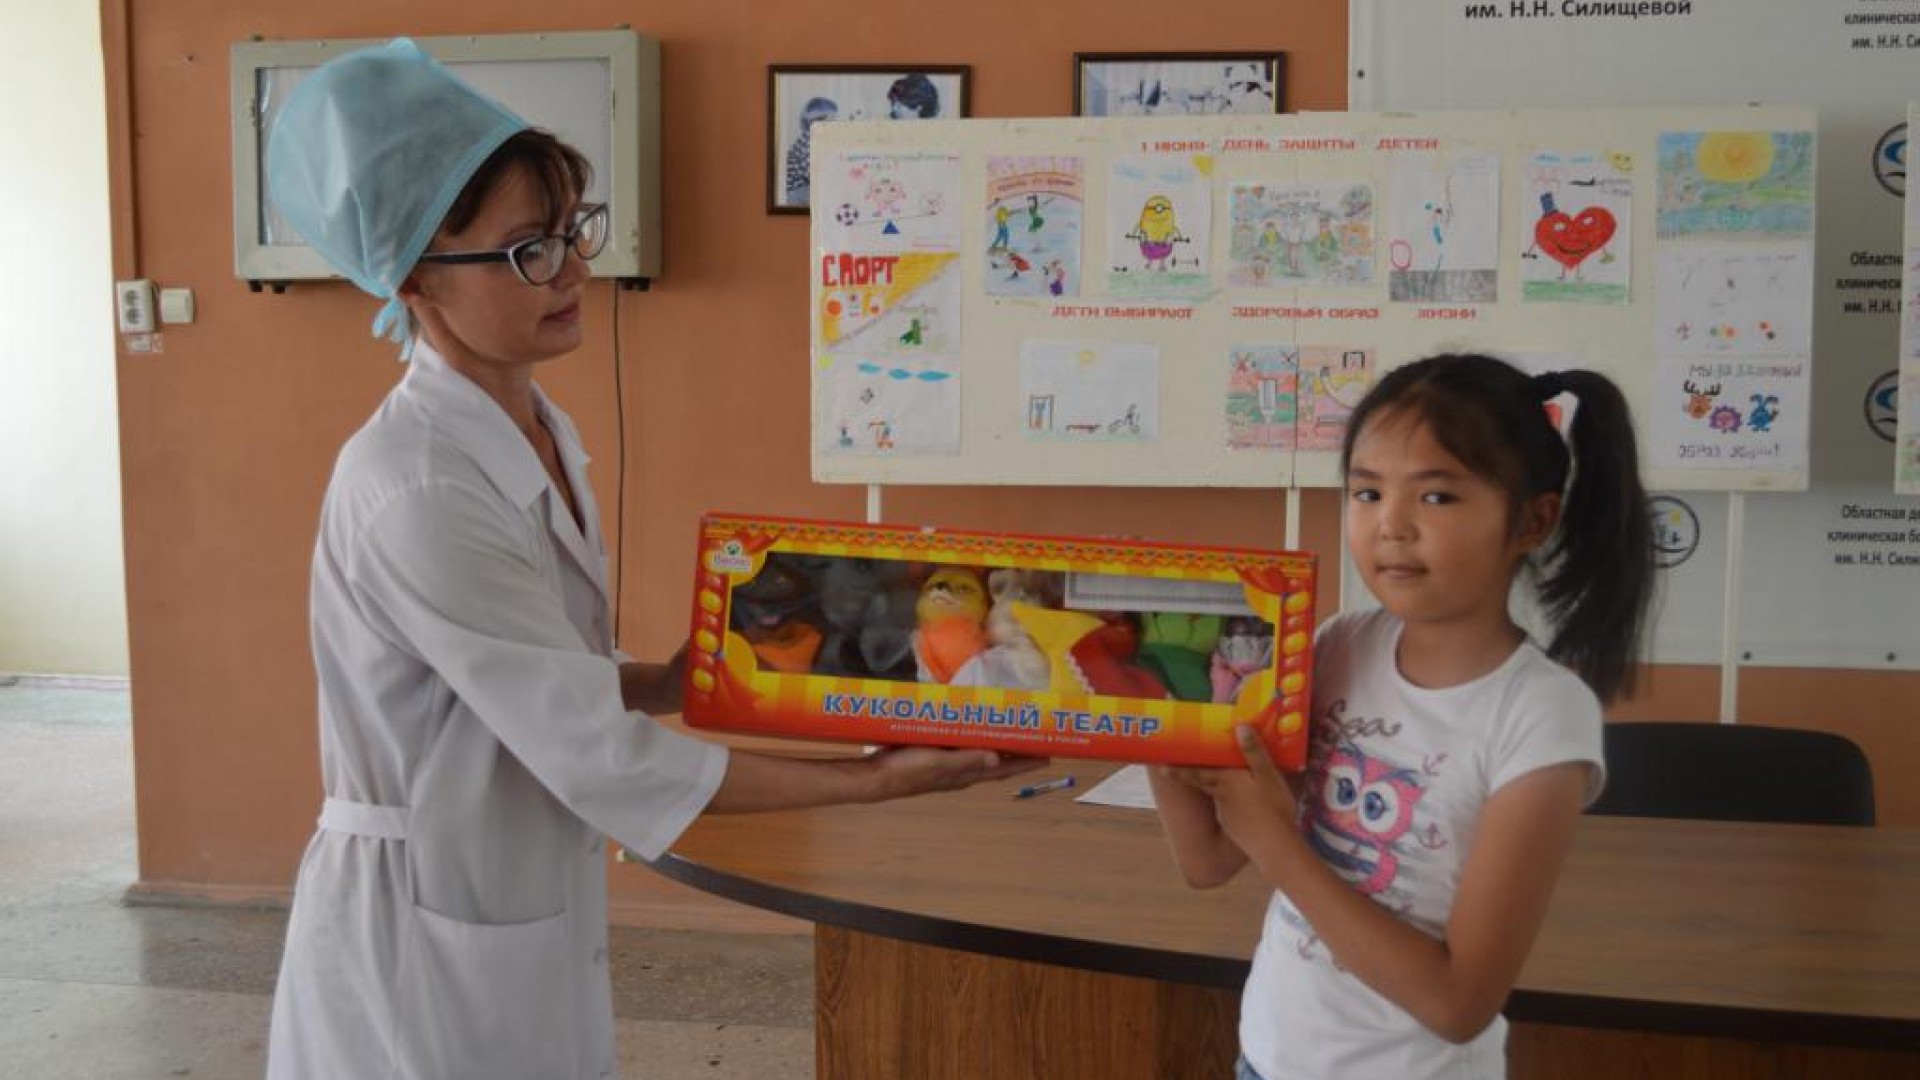 В ОДКБ имени Н.Н. Силищевой подведены итоги конкурса детского рисунка «Будь здоров!»